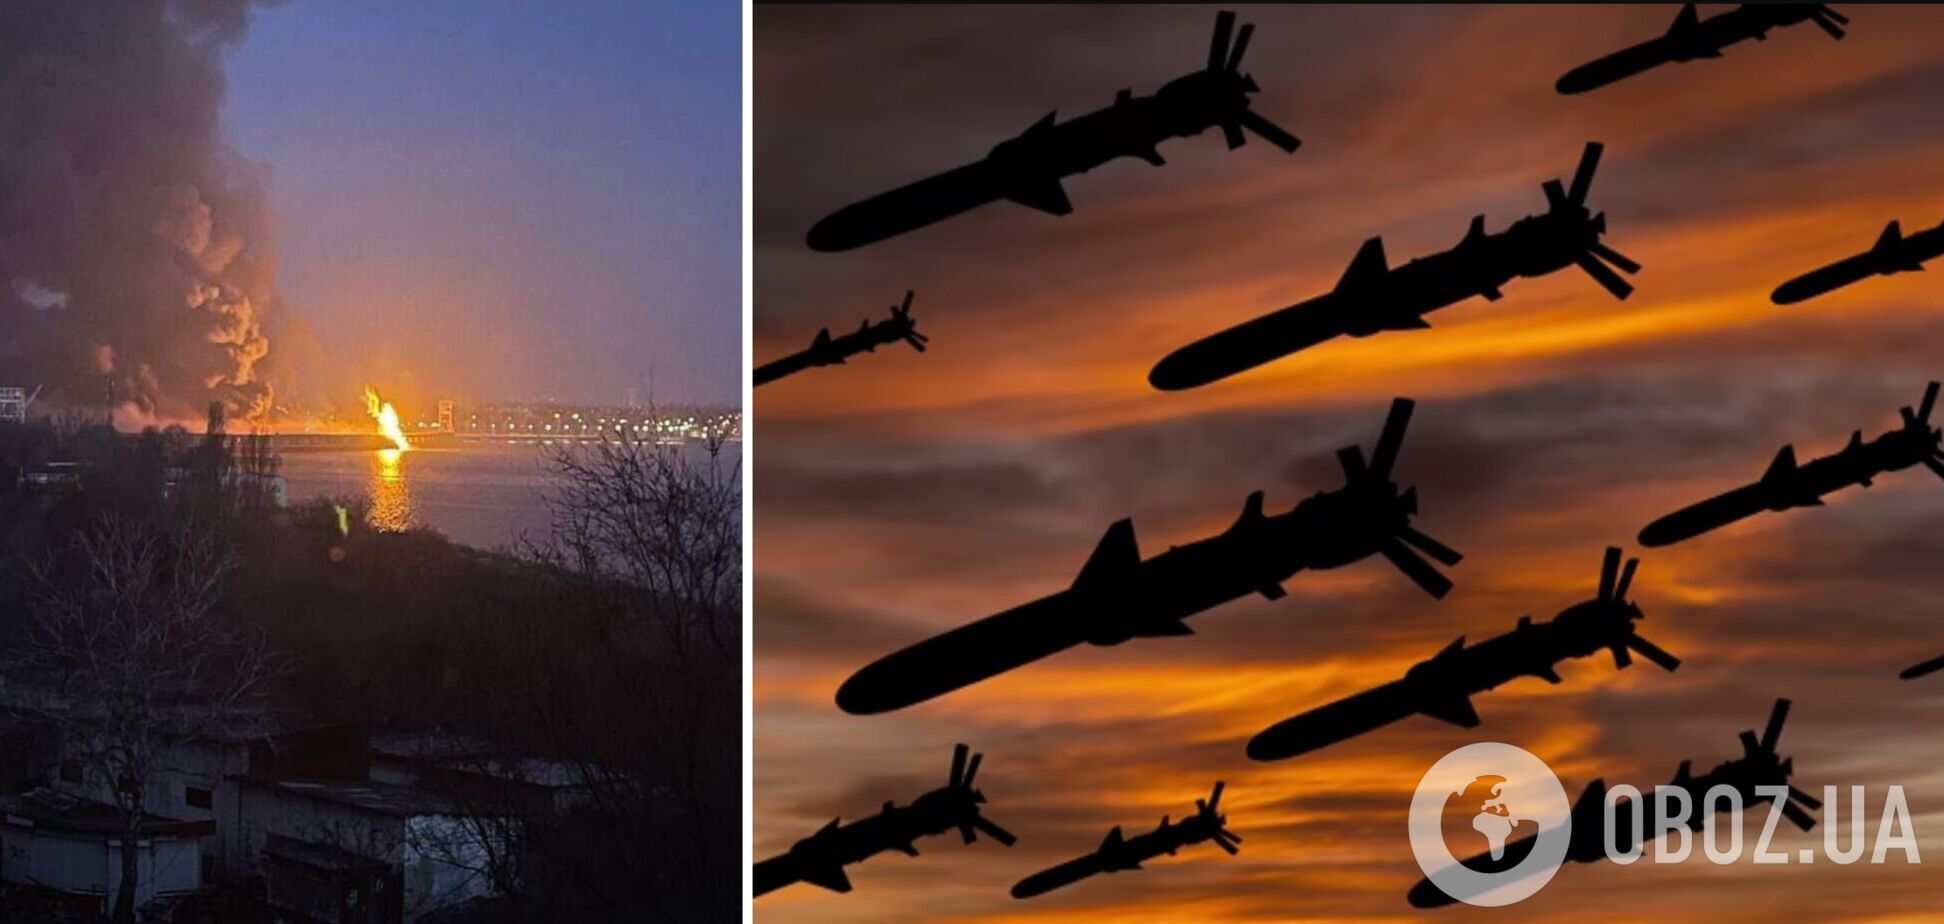 Ракеты Х-101/555 преодолели наибольшую дистанцию в 2300 км: чем Россия била по Украине 22 марта и что известно о последствиях